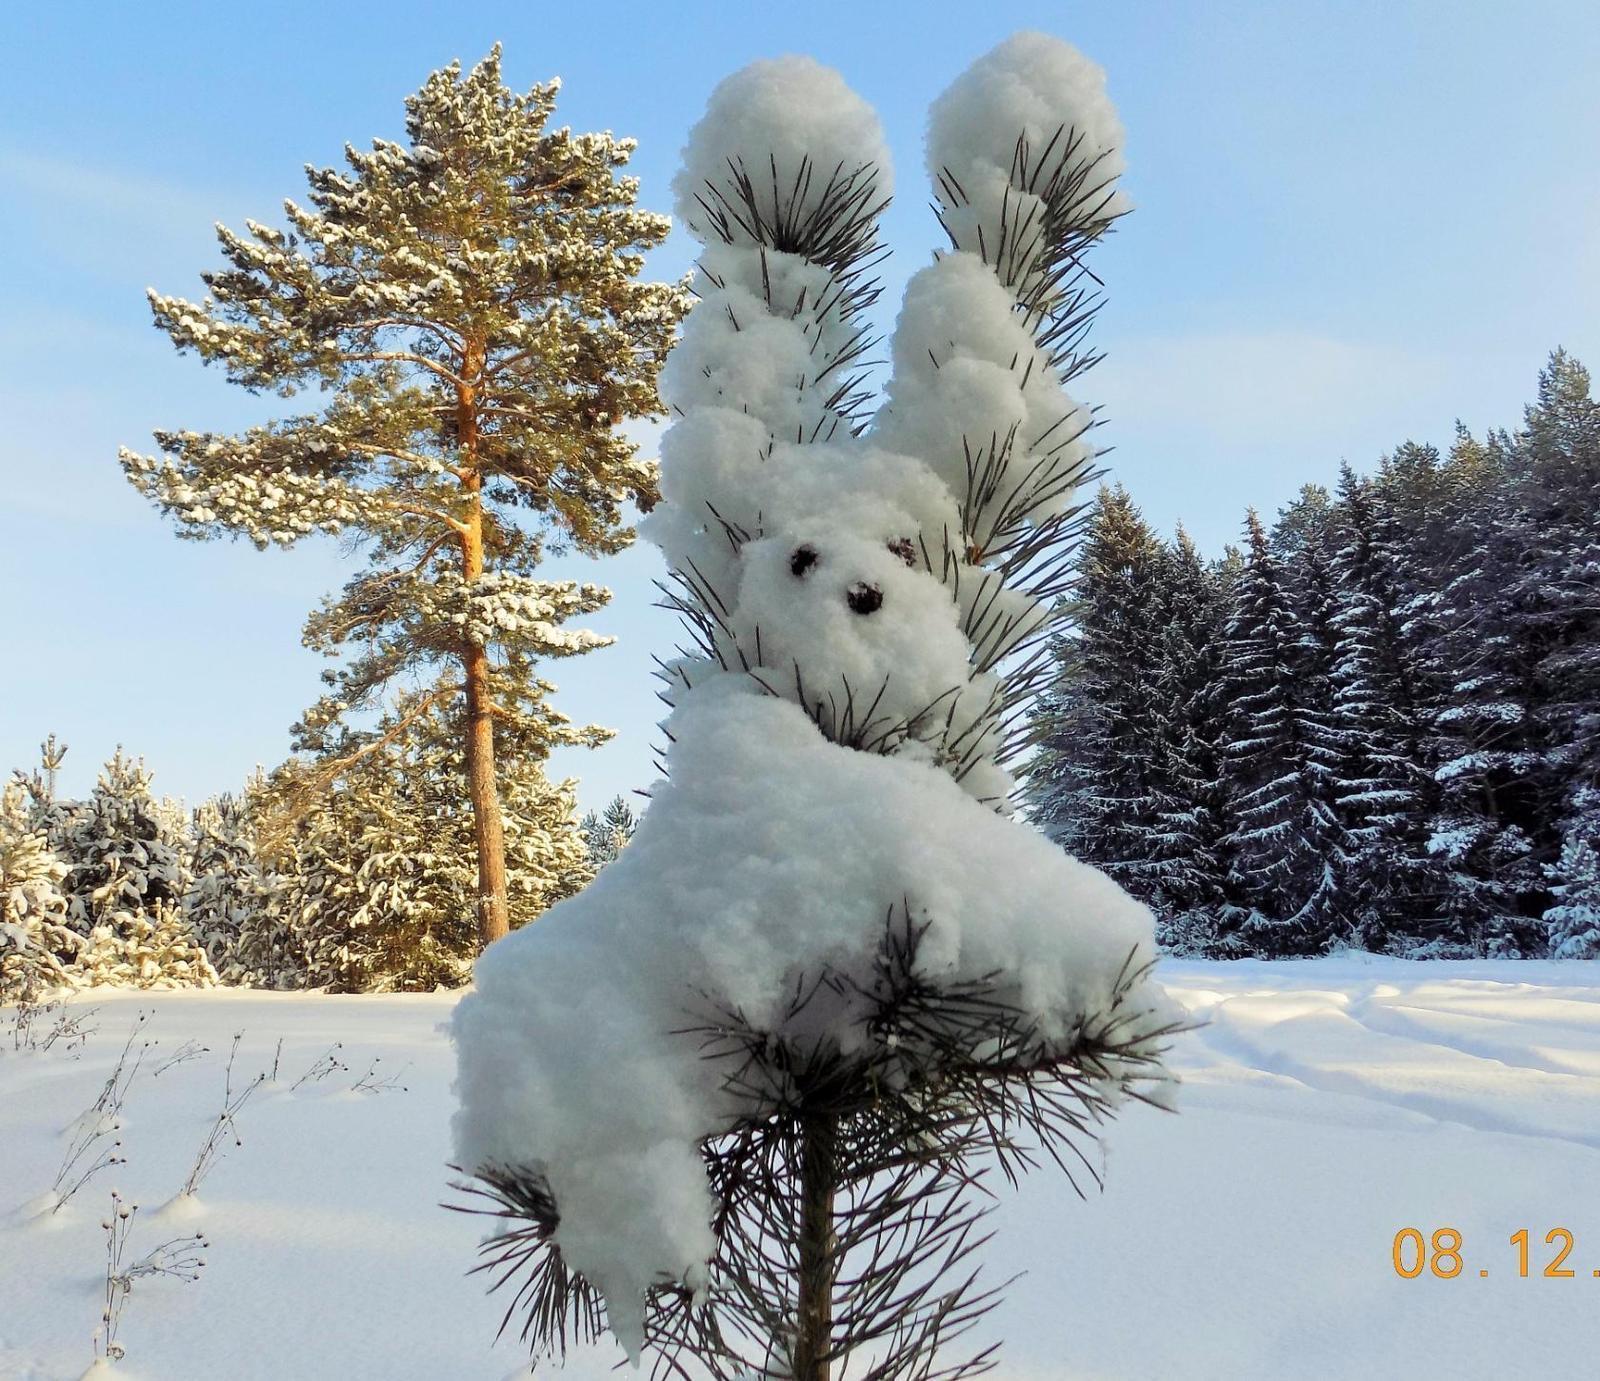 julia_deniz_ph - Какая замечательная погода! Сказка! Красивая зима у нас в  этом году! 🥰🤩 | Facebook